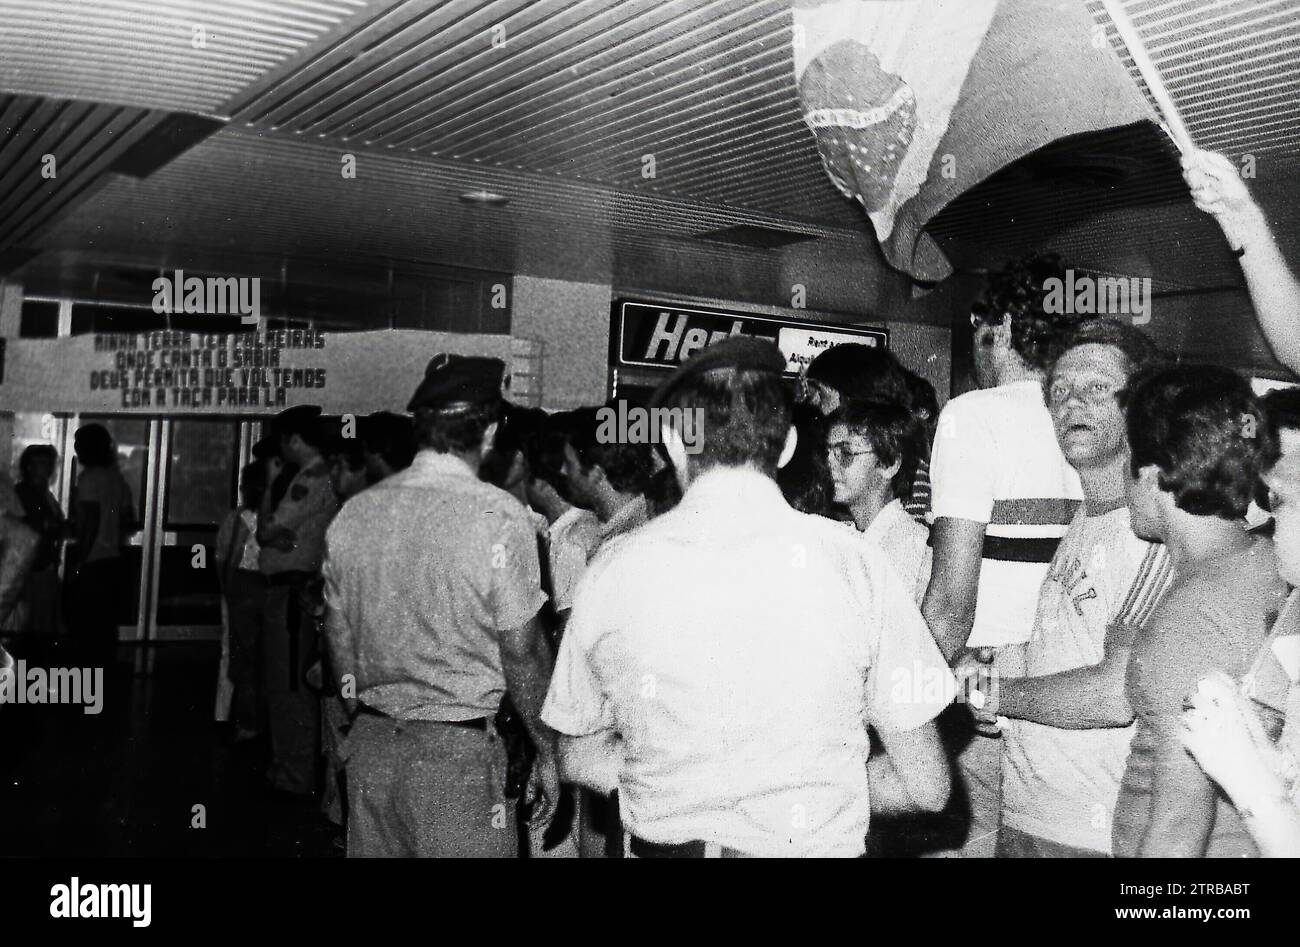 6/7/1982. Fans warten am Flughafen San Pablo in Sevilla auf die brasilianische Mannschaft, während der Feier der Weltmeisterschaft 1982 im andalusischen Hauptquartier. Quelle: Album / Archivo ABC / Doblado Stockfoto